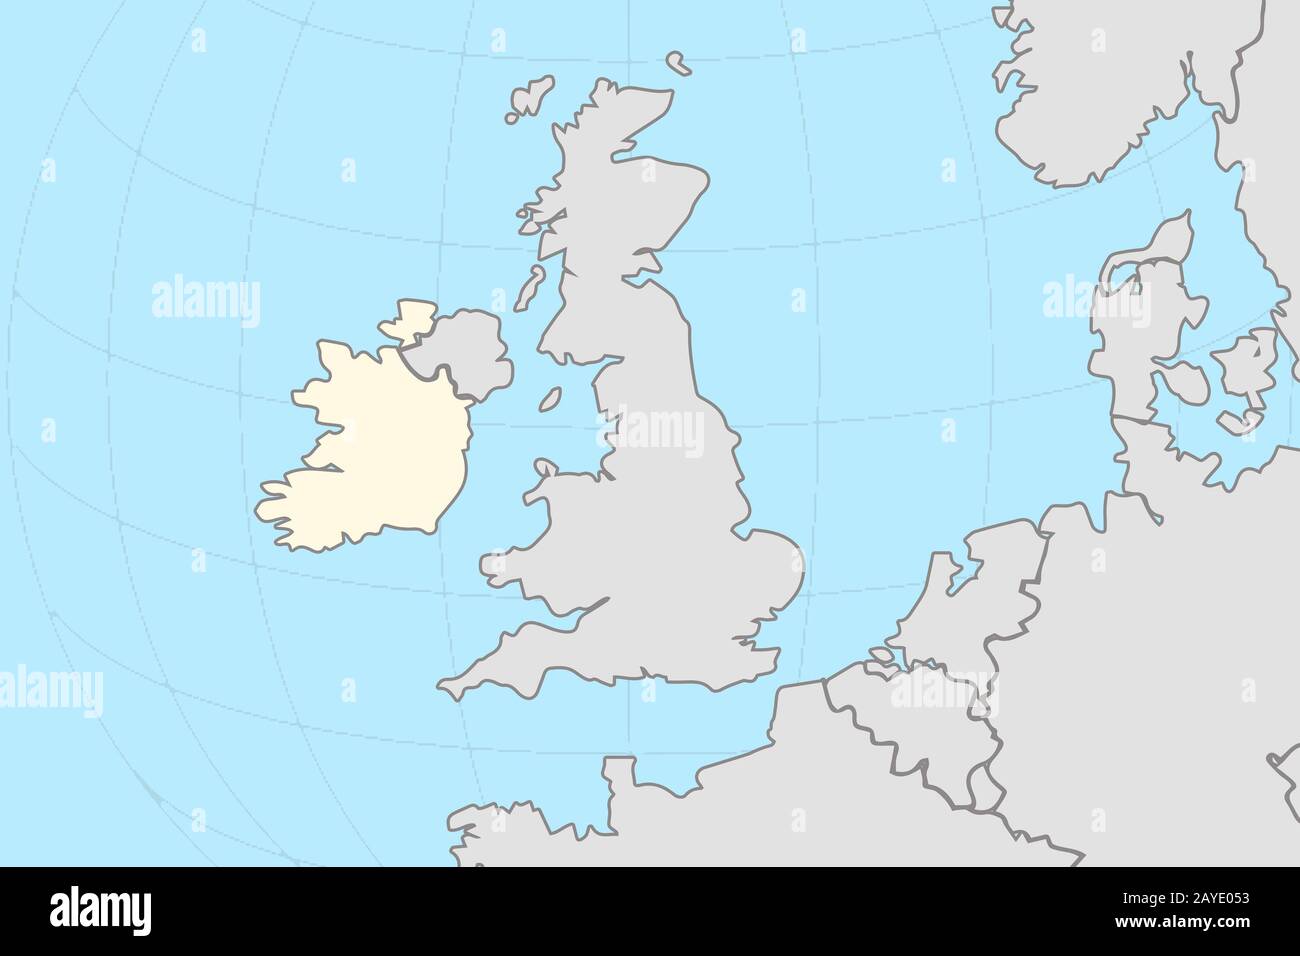 Teil der europäischen Weltkarte mit der Karte der Republik Irland, auf der das gelb unterlegte Land von anderen europäischen Ländern in grauer Farbe dargestellt wird Stockfoto